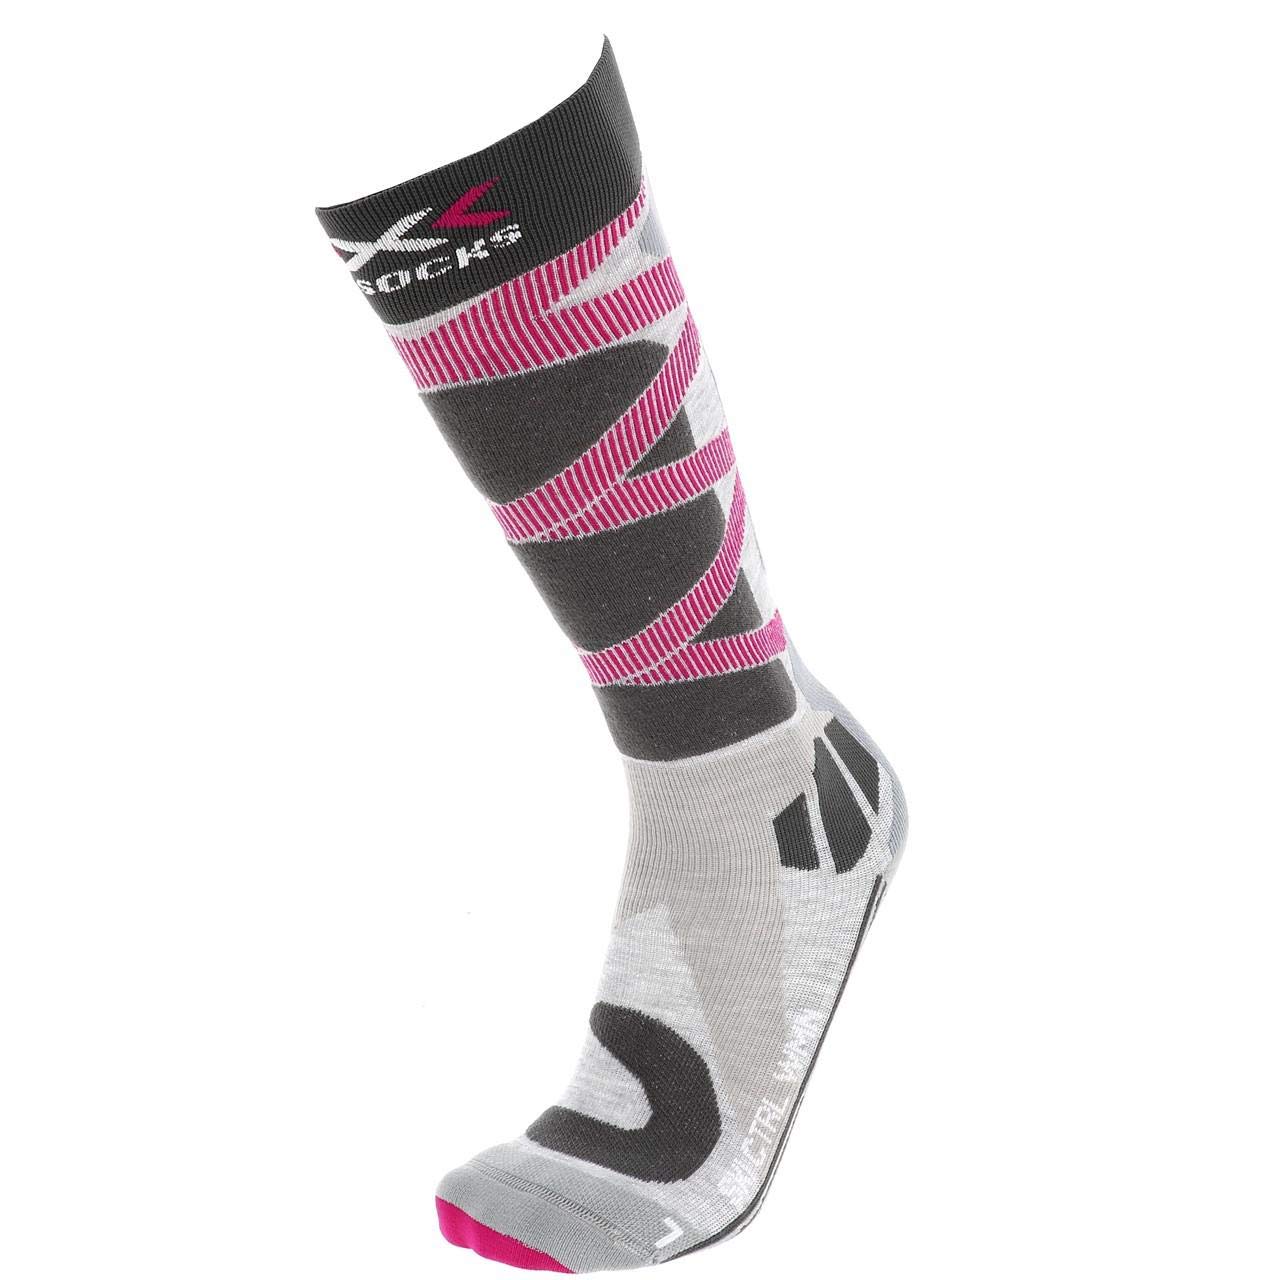 Promotions X-Socks Chaussettes Ski Control 4.0 Lady Chaussettes de ski Femme Gris/Rose FR : S (Taille Fabricant : S(37-38)) vM4zEhB2o véritable contre